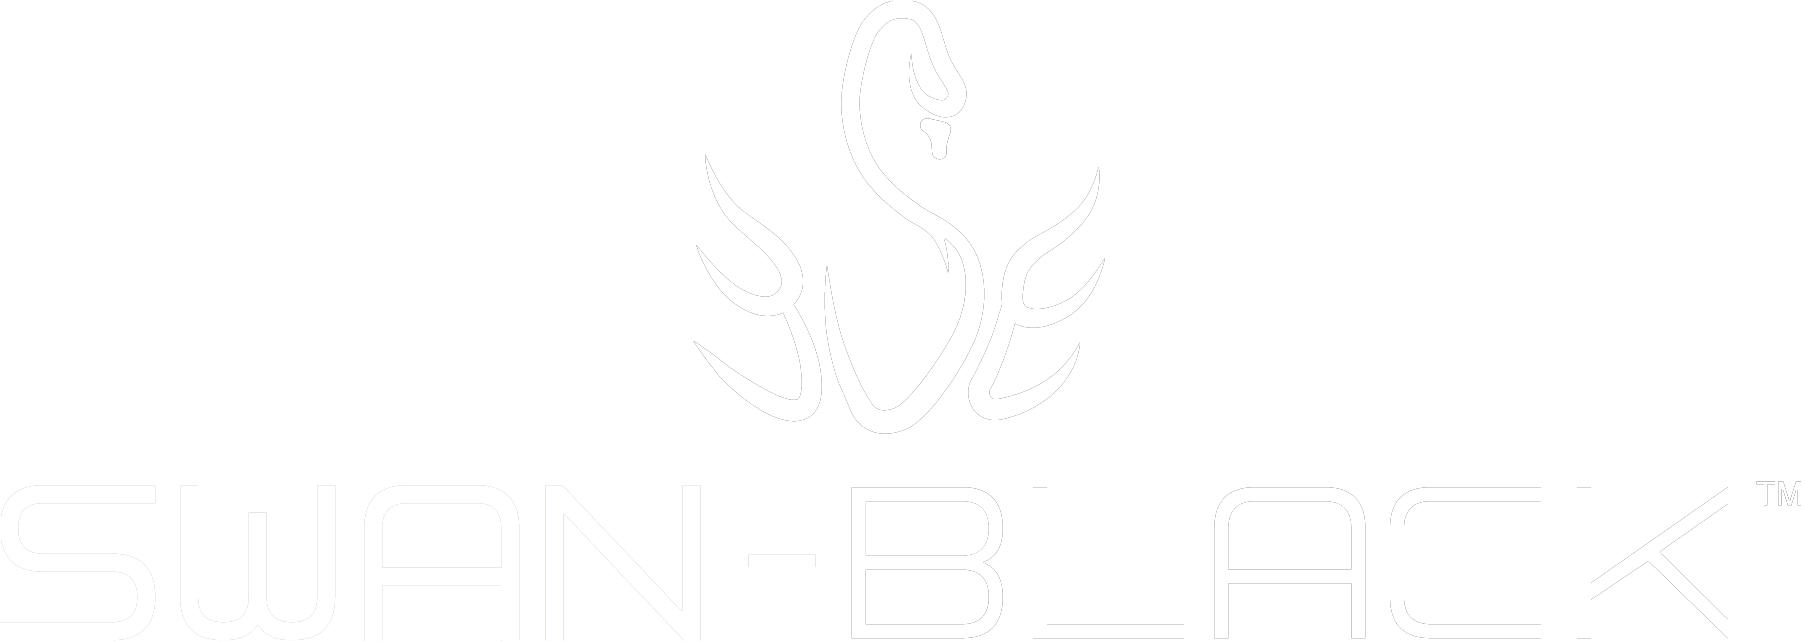 Swan Black Logo Wh logo